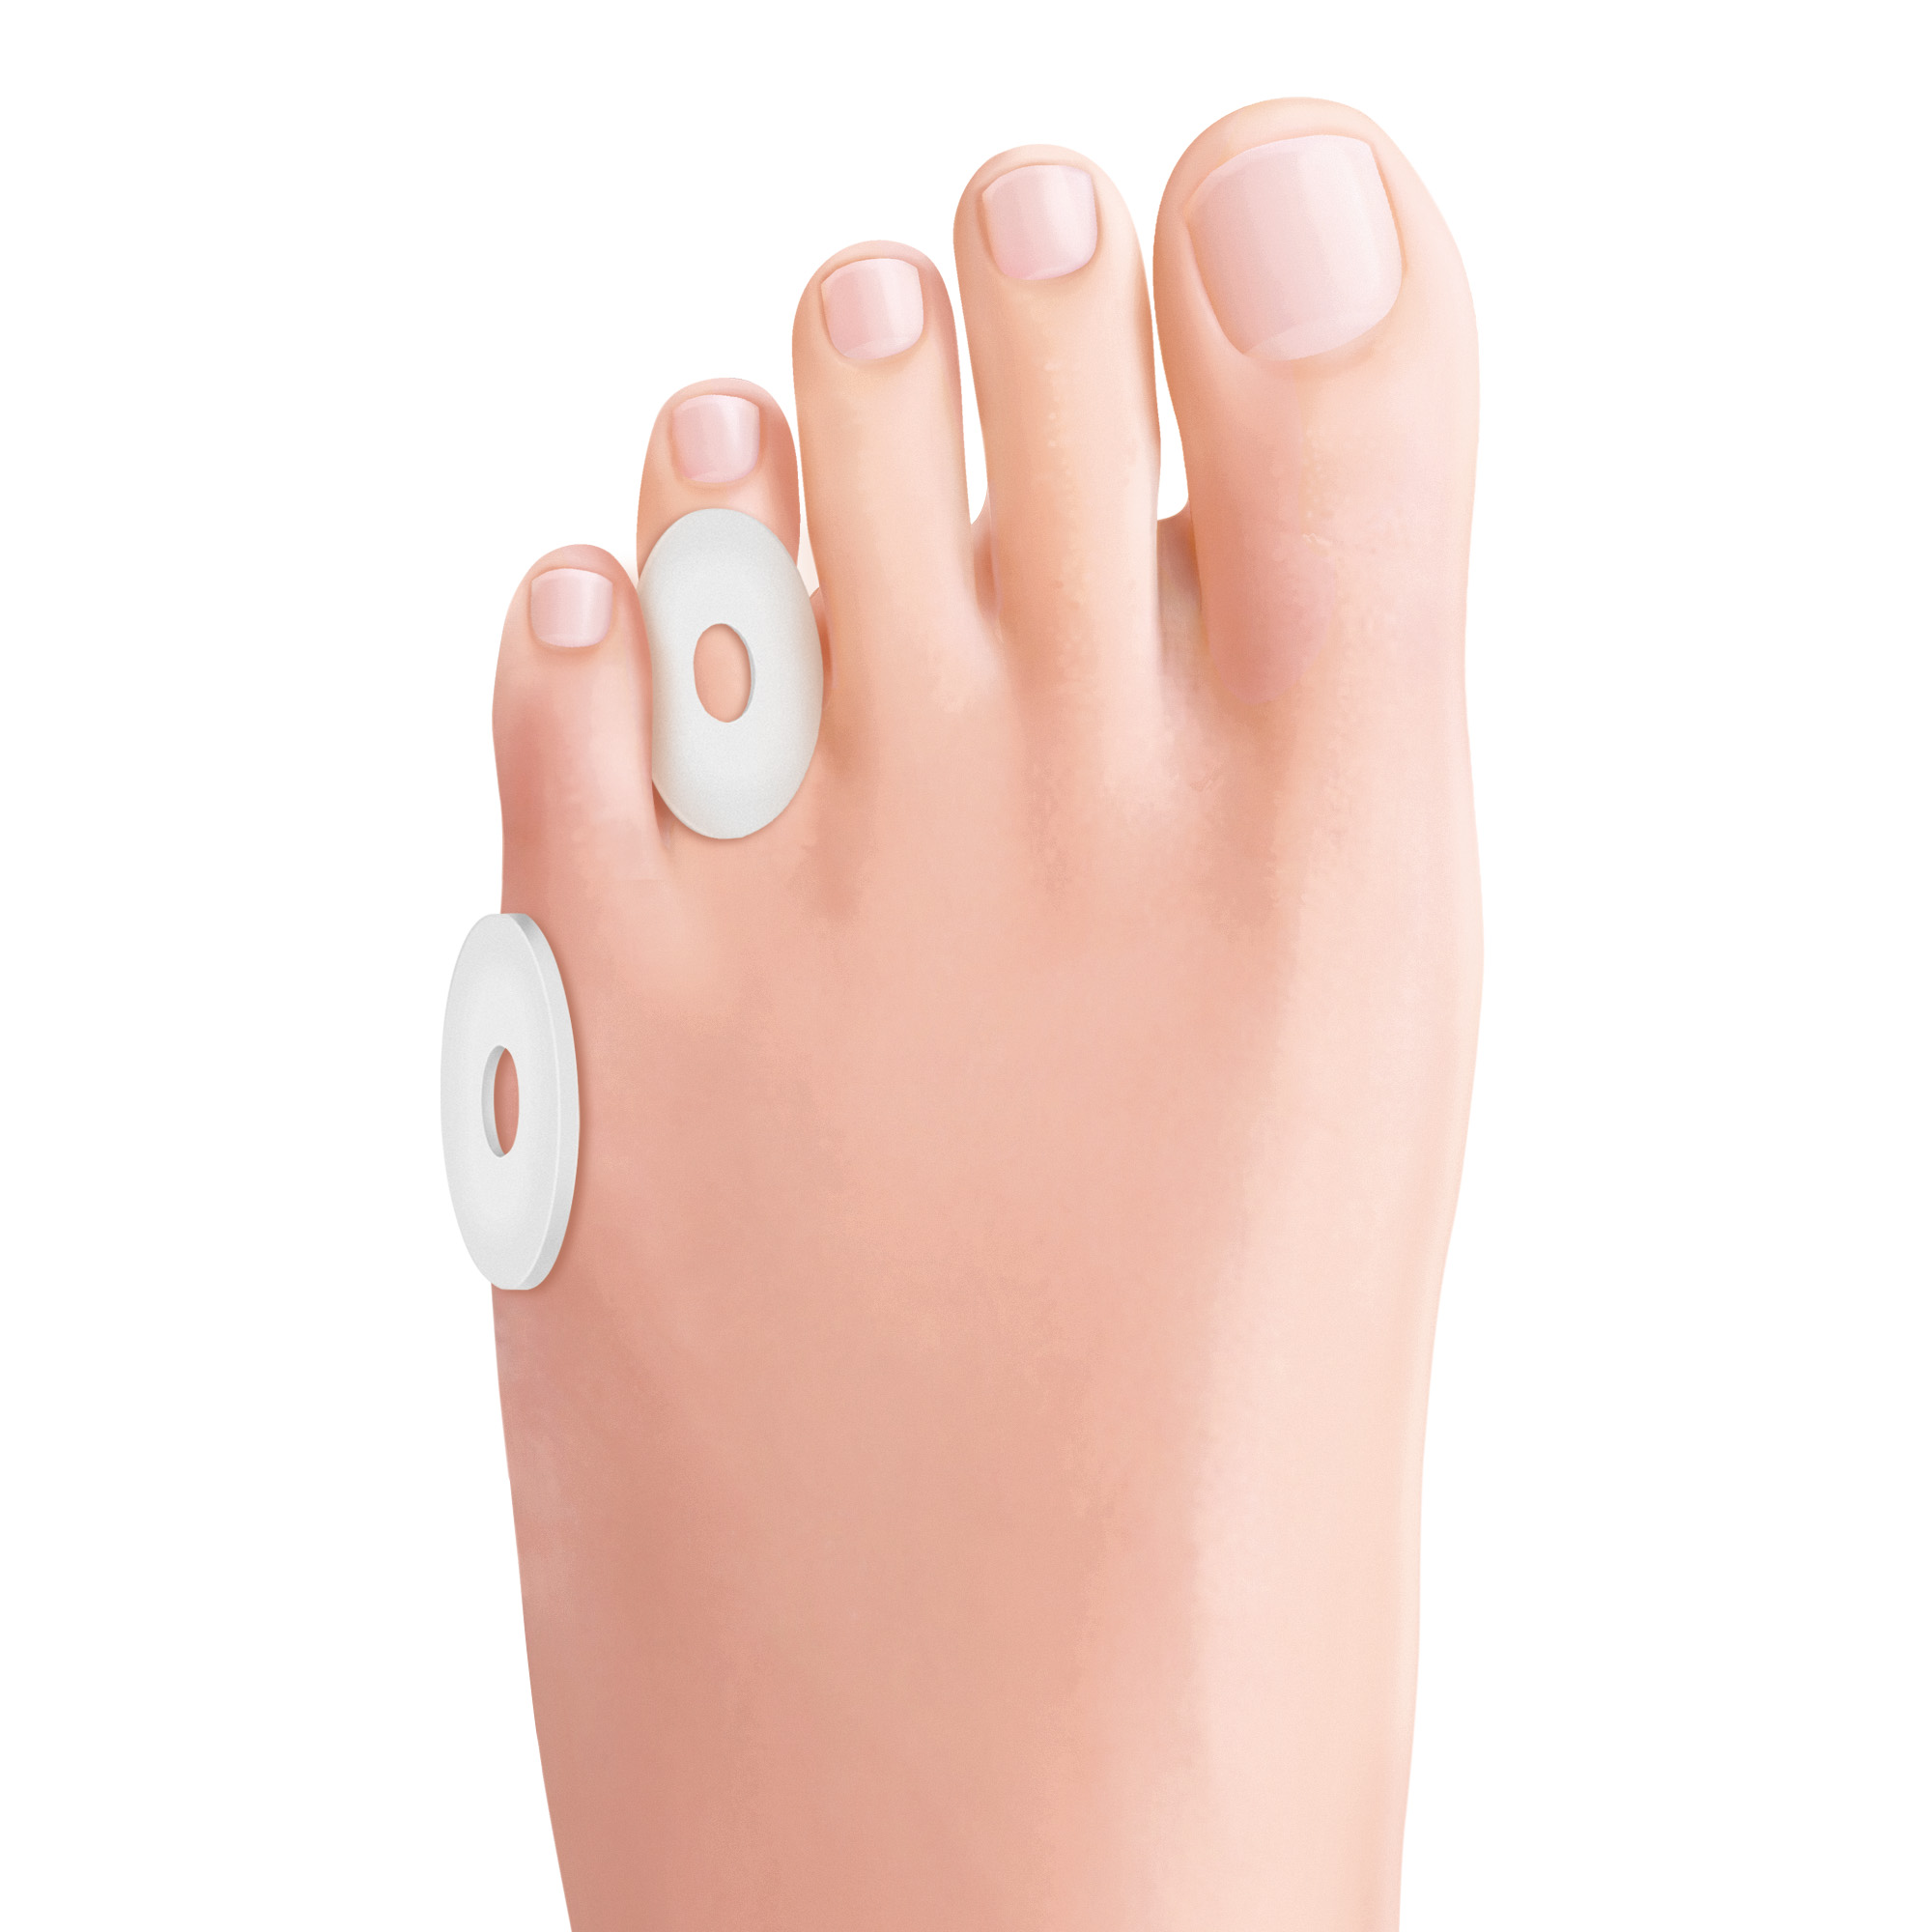 Self-adhesive oval foot pads Bio-Gel in Tecniwork Polymer Gel